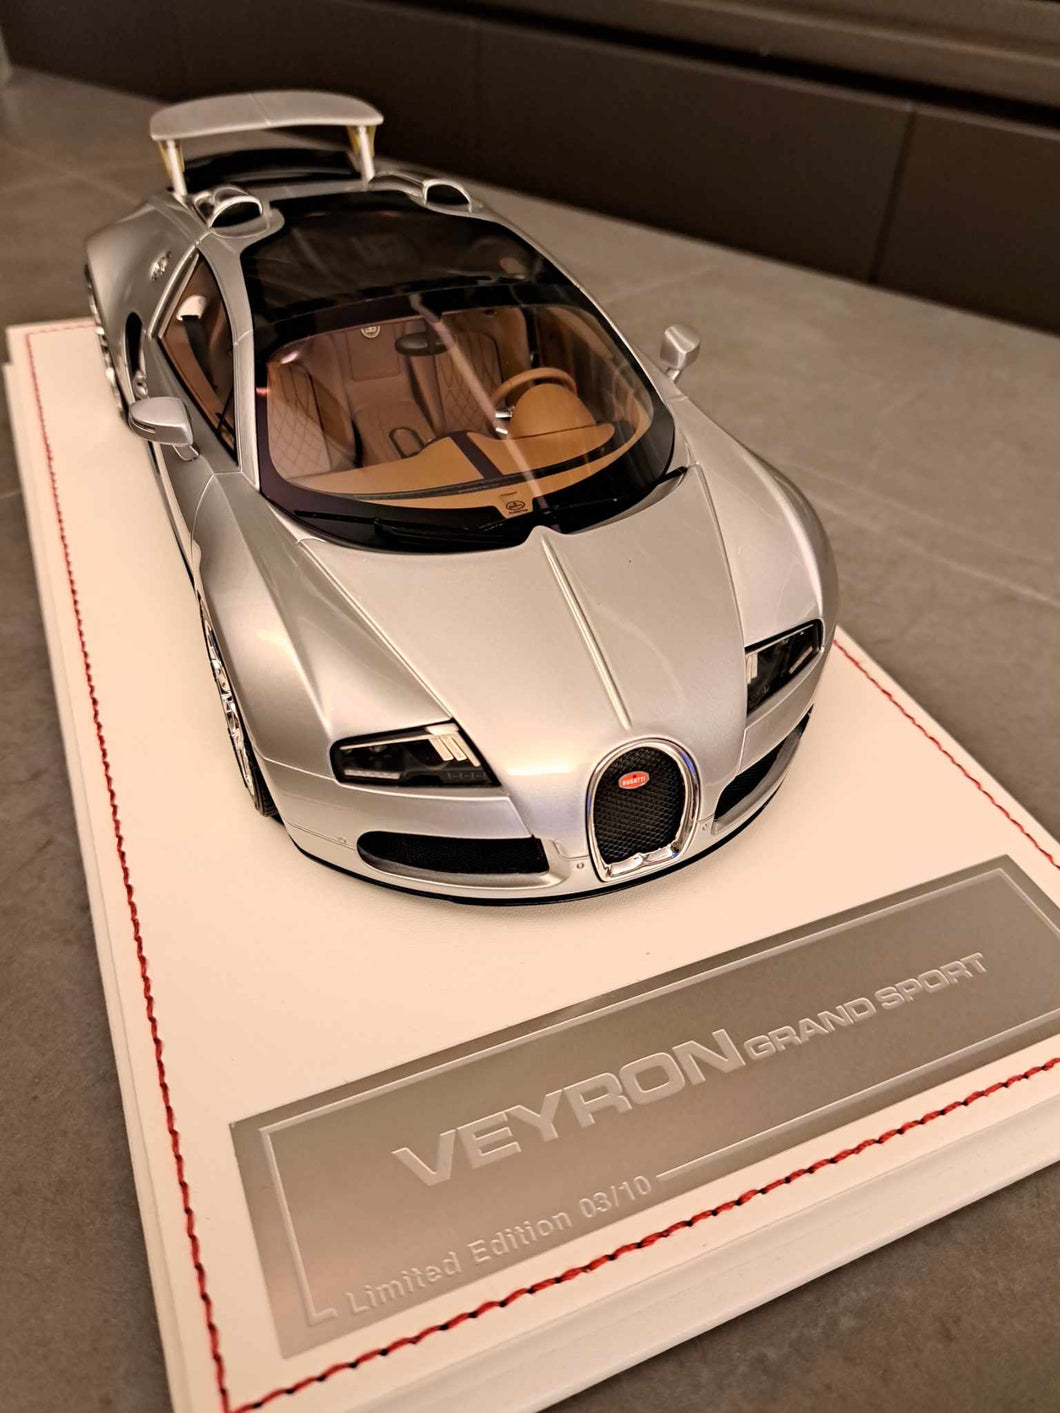 Bugatti Veyron Grand Sport - metallic silver on white base - 1:18